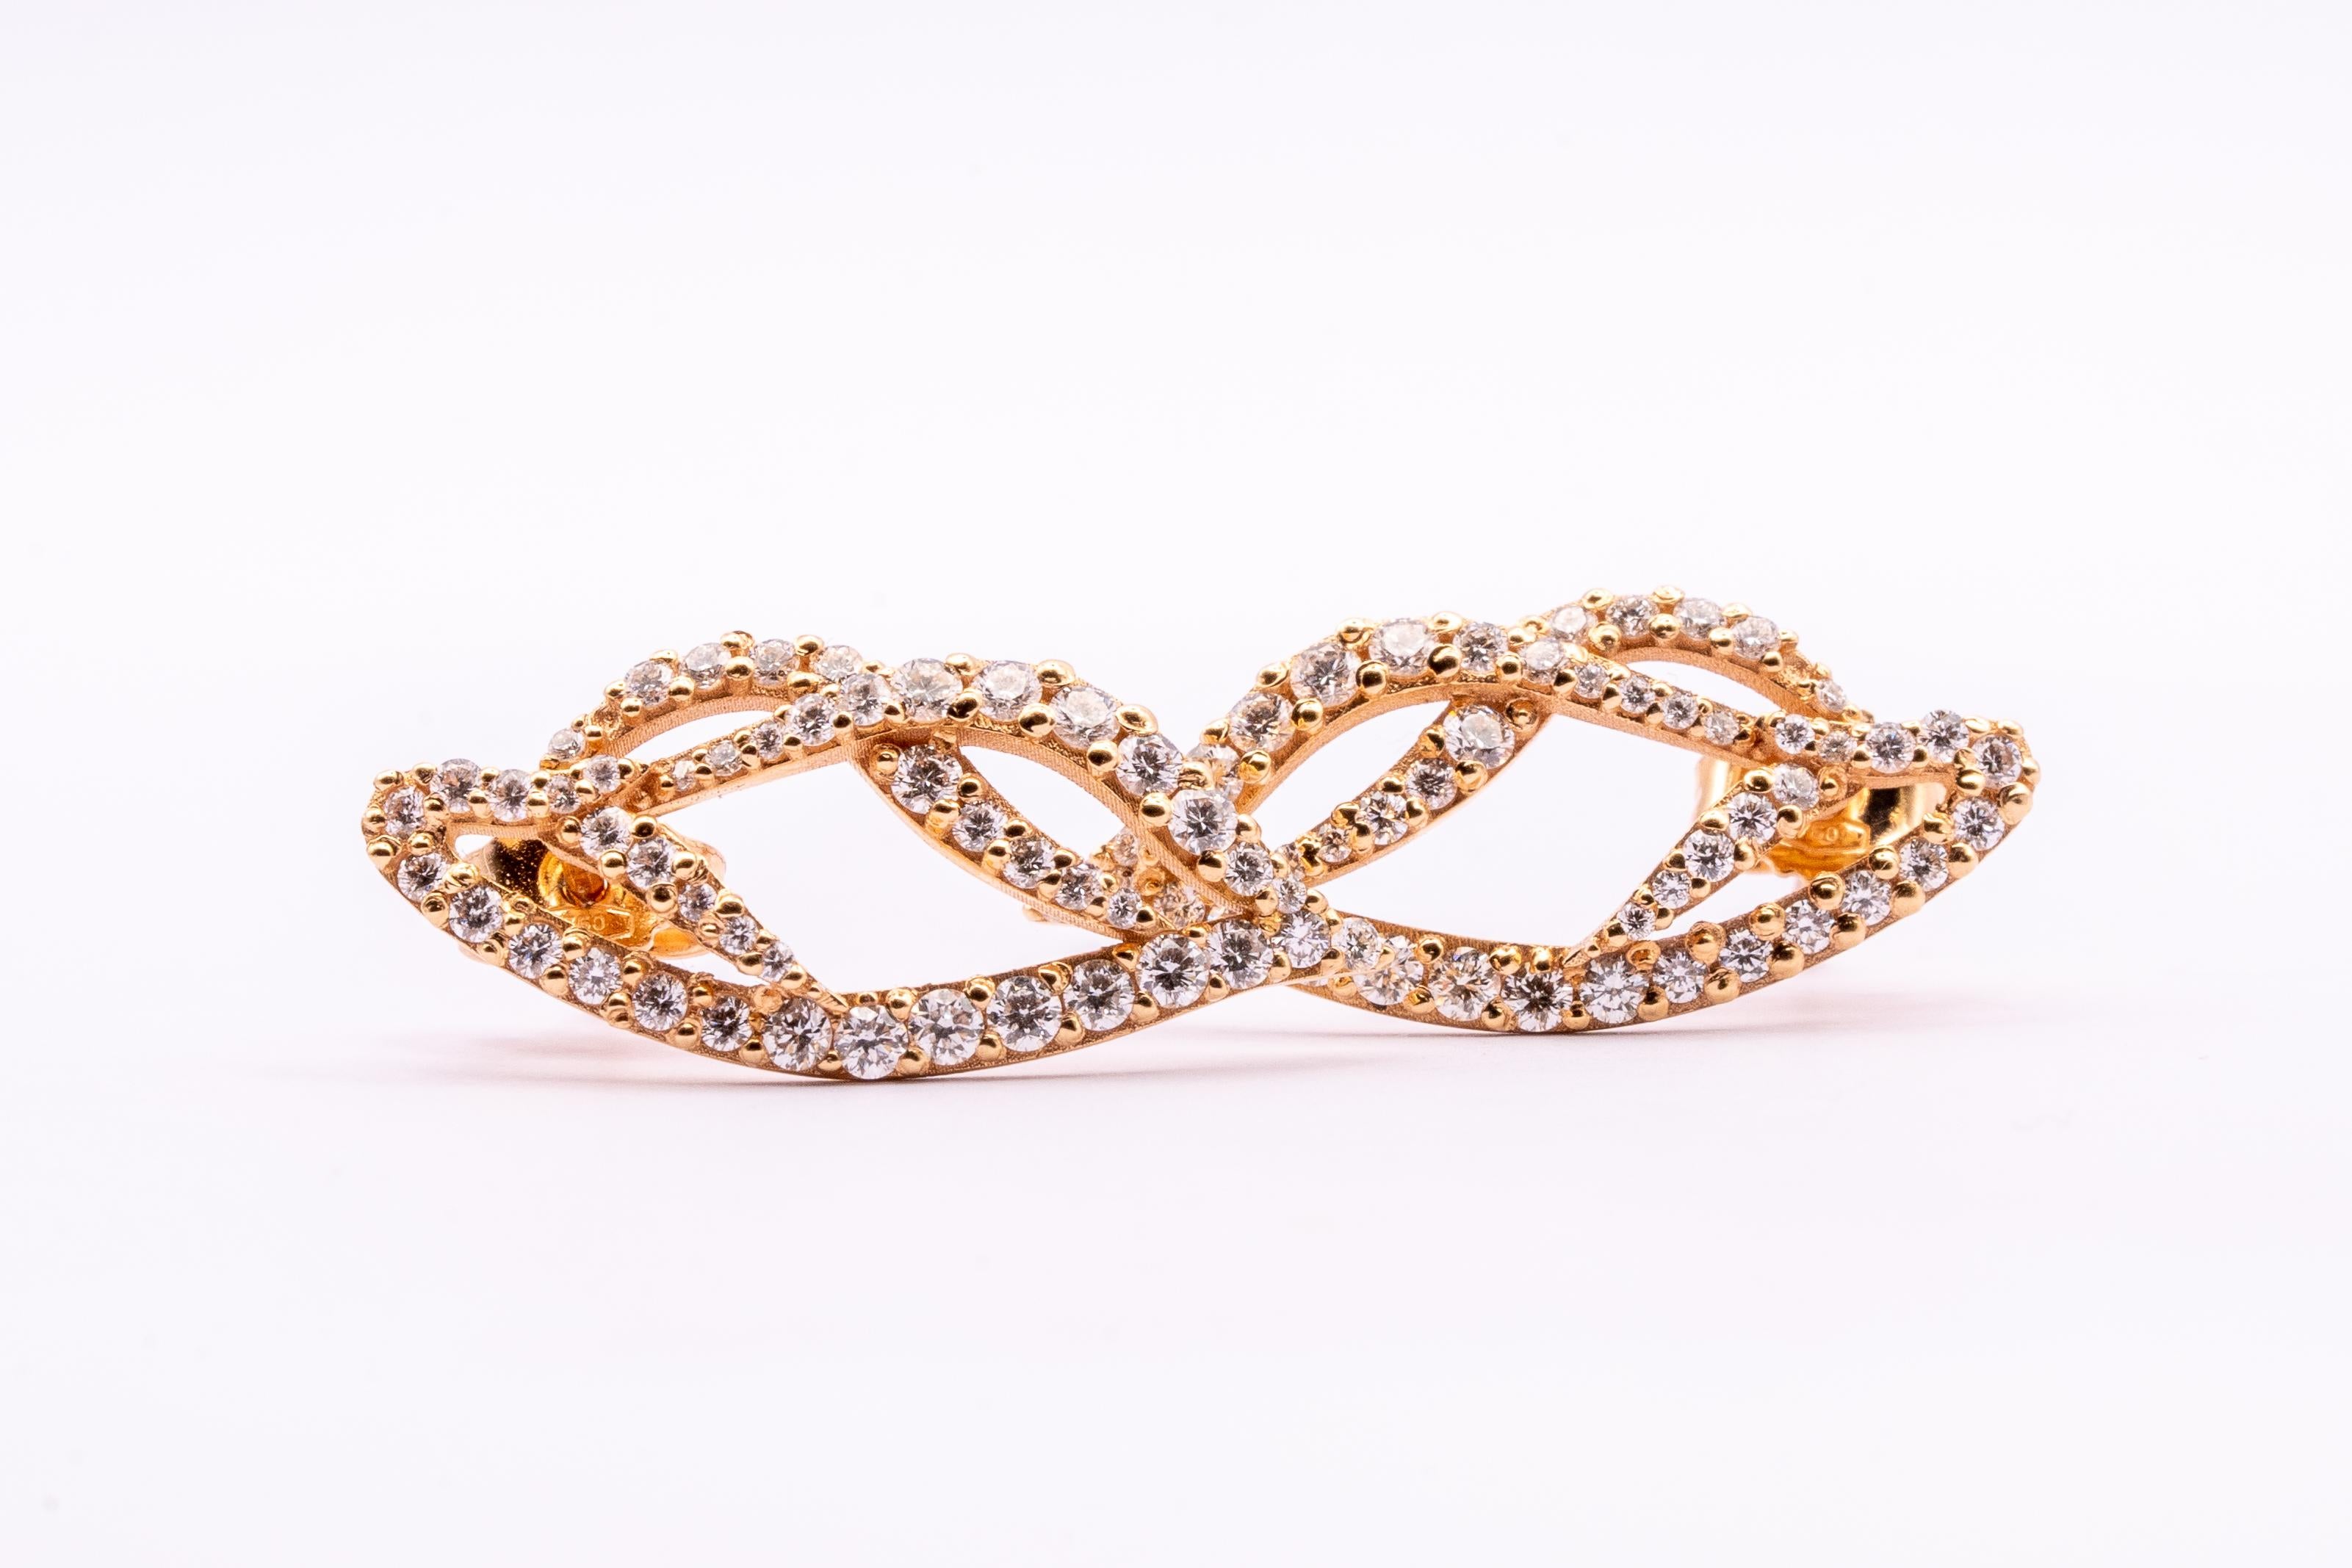 Diese wundervollen Leo Milano Ohrringe aus unserer Solari Collection zeigen in jedem Detail eine sehr komplizierte, aber perfekt ausgeführte Verarbeitung. 18 Karat Gelbgold  Die Ohrringe wiegen 4,85 Gramm Diamanten von 2,25 Karat. 
Jedes Stück